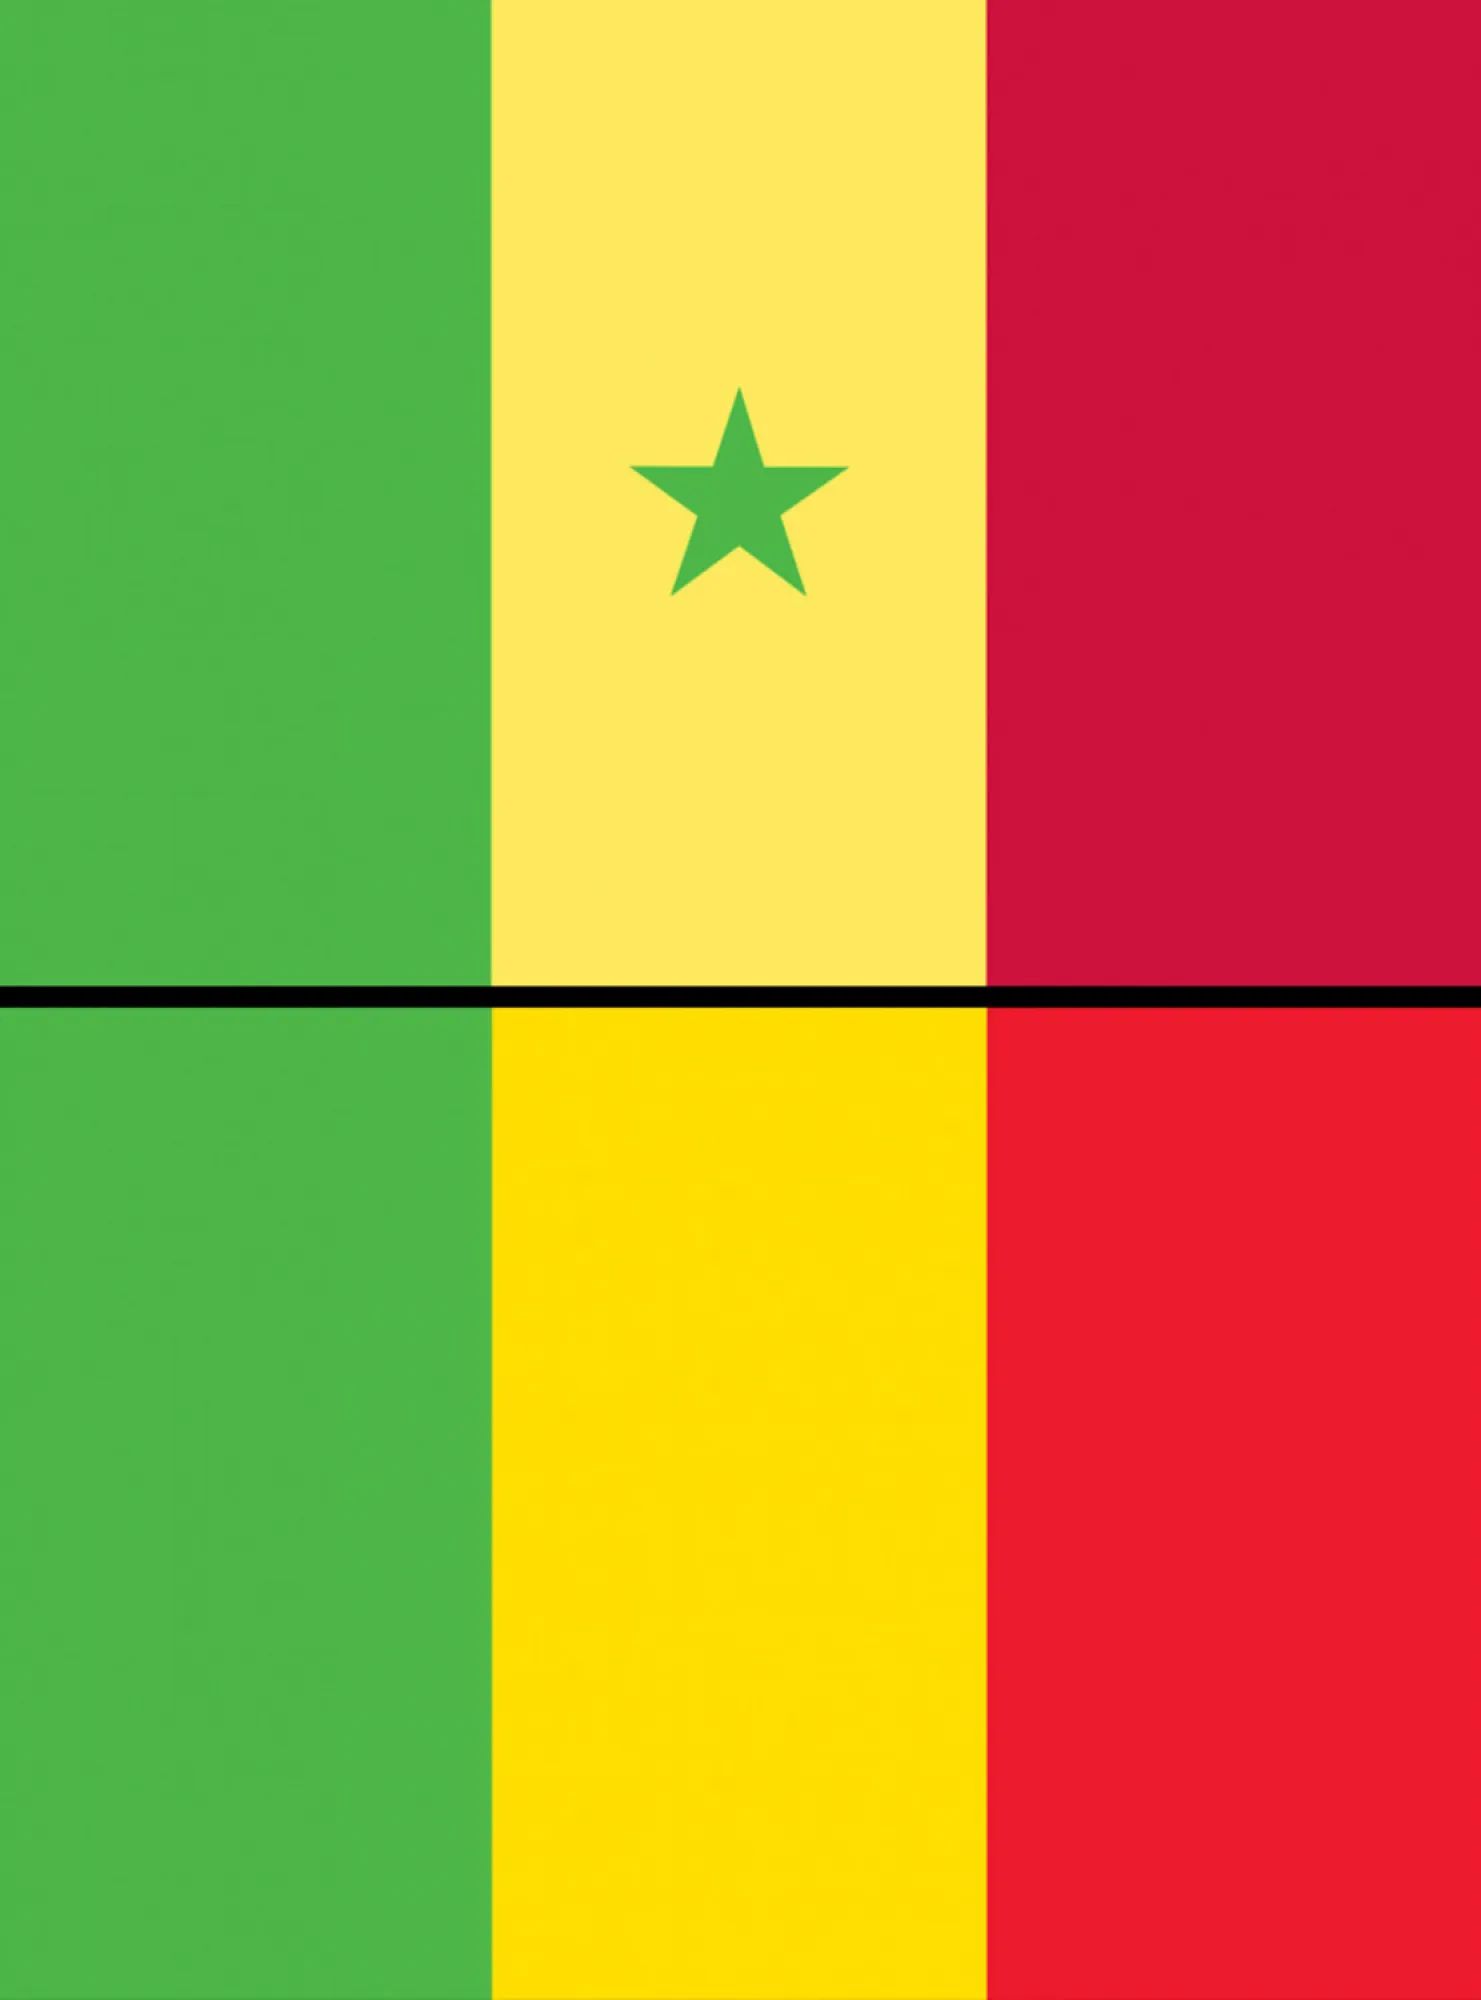 Флаг зеленый желтый зеленый вертикально. Республика мали флаг. Зелено желто красный флаг Африка. Красный желтый зеленый. Флаги с зеленым цветом.